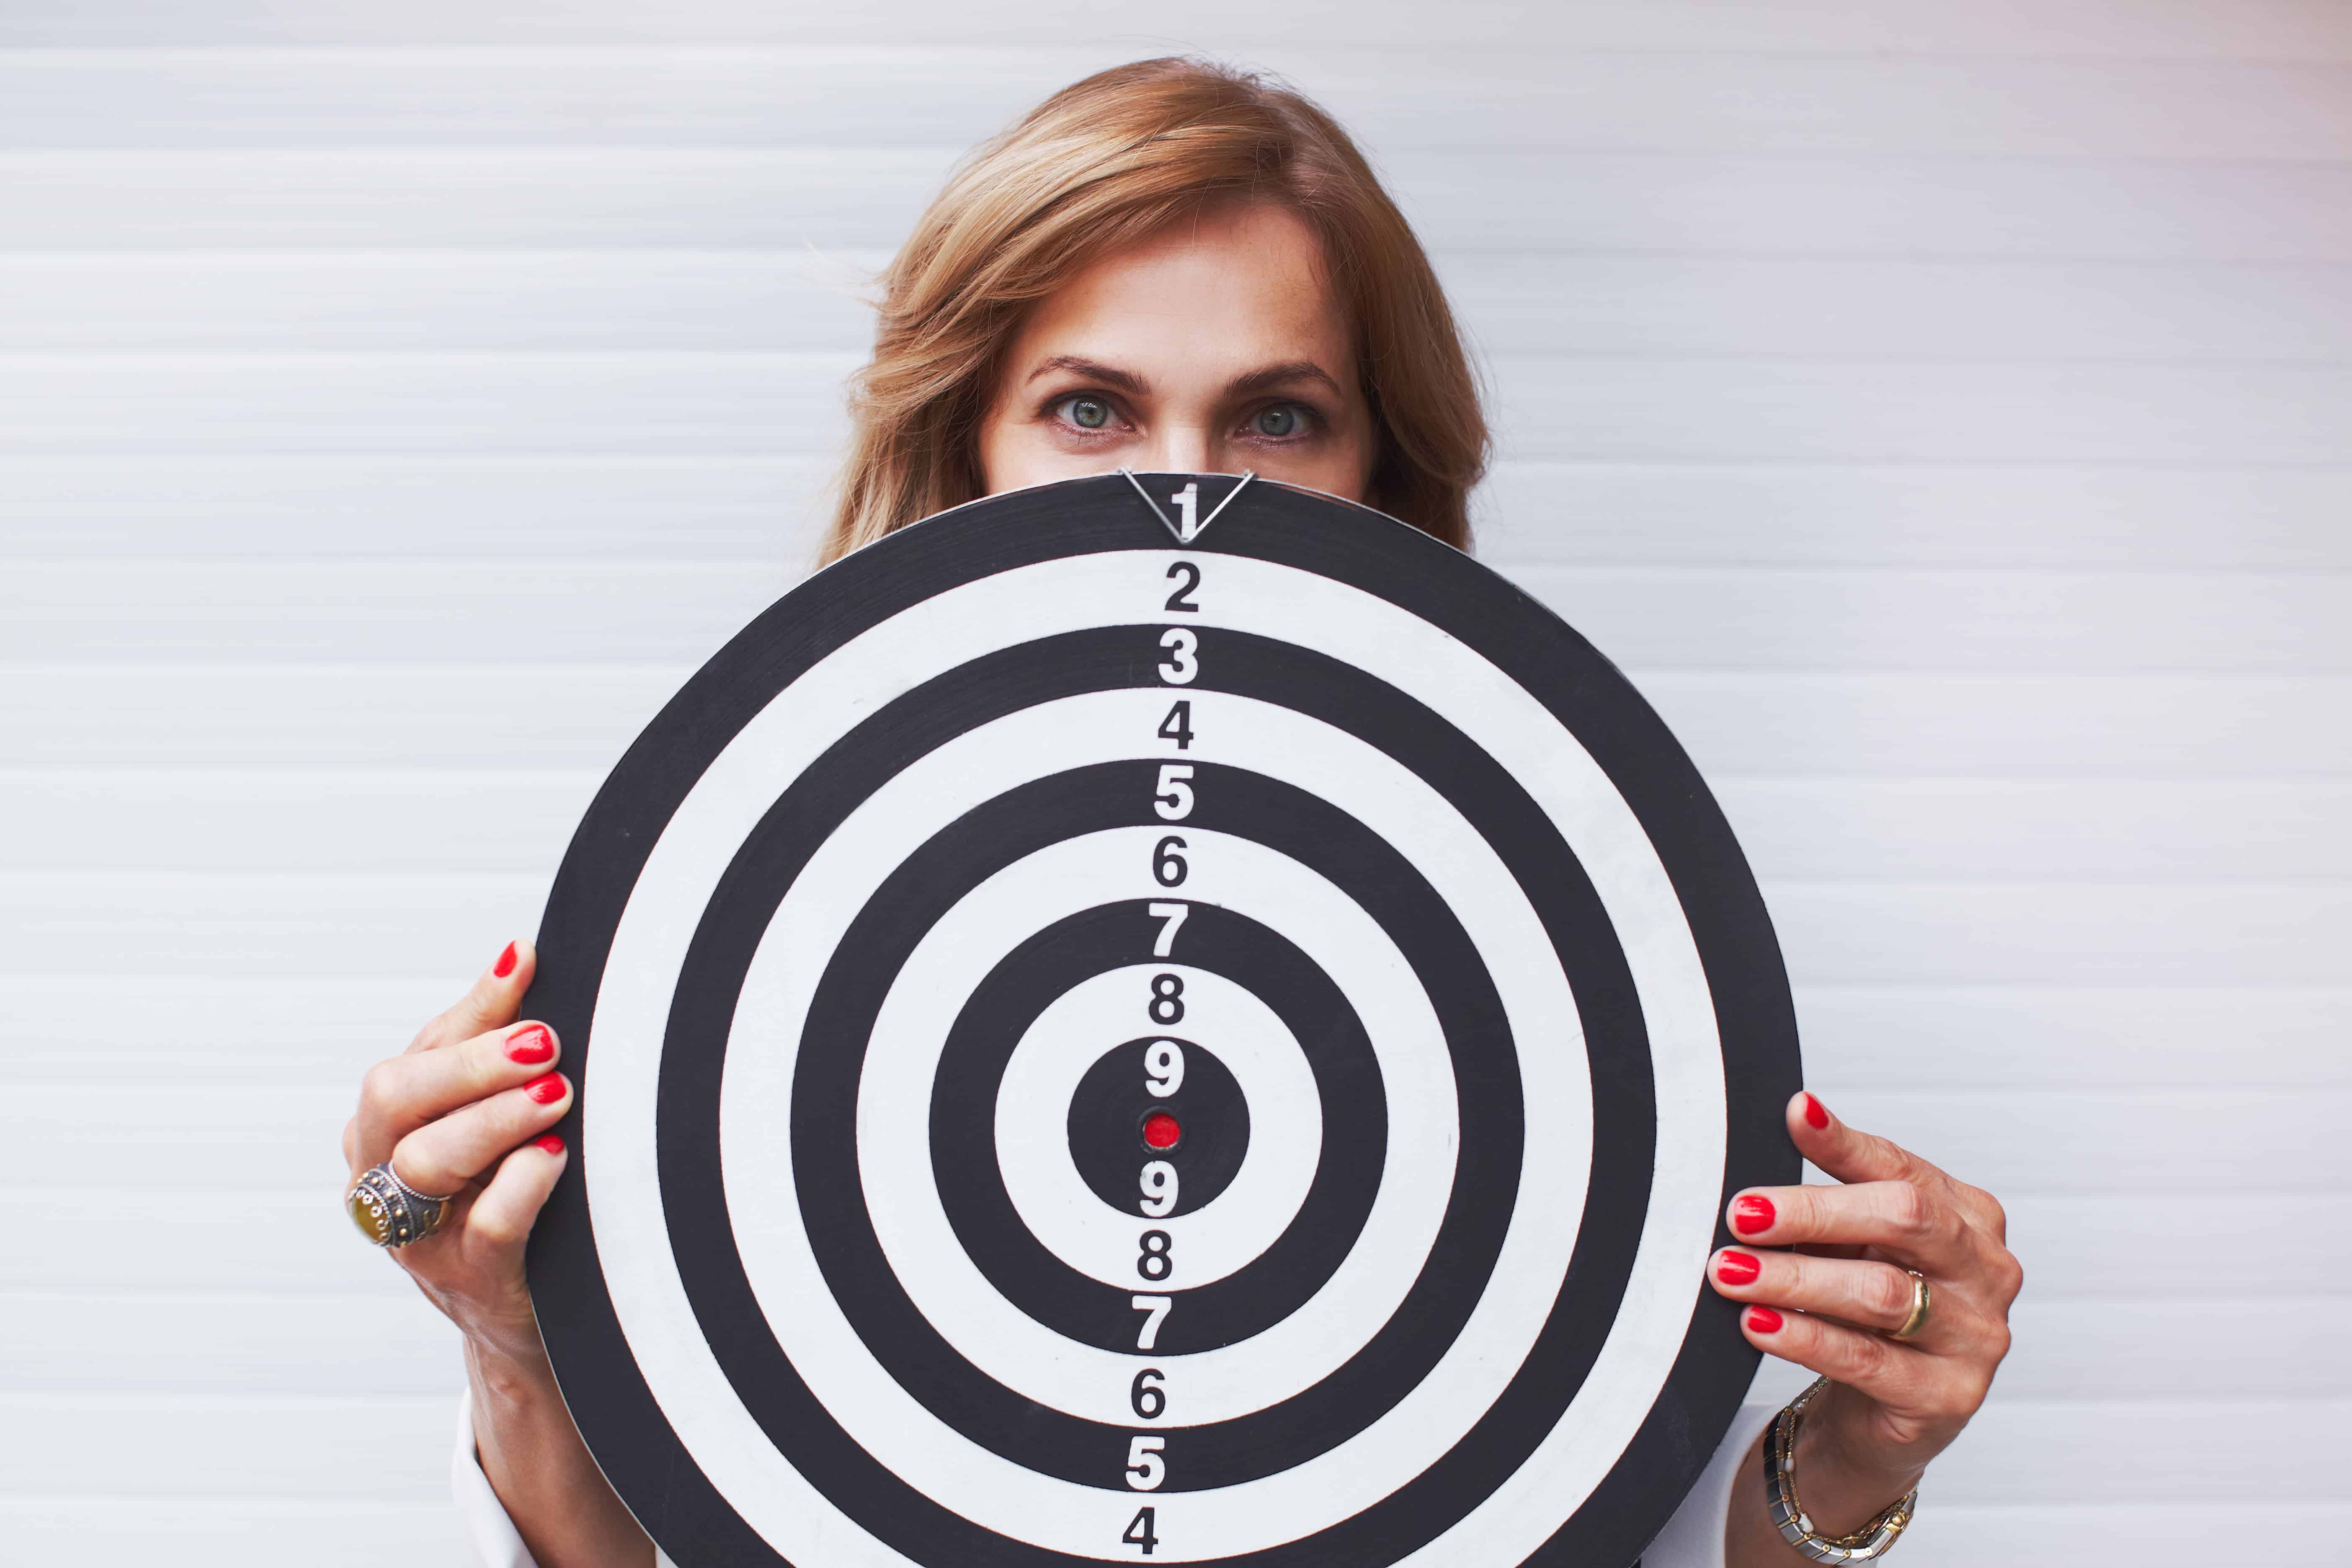 A women holding a dart target board.